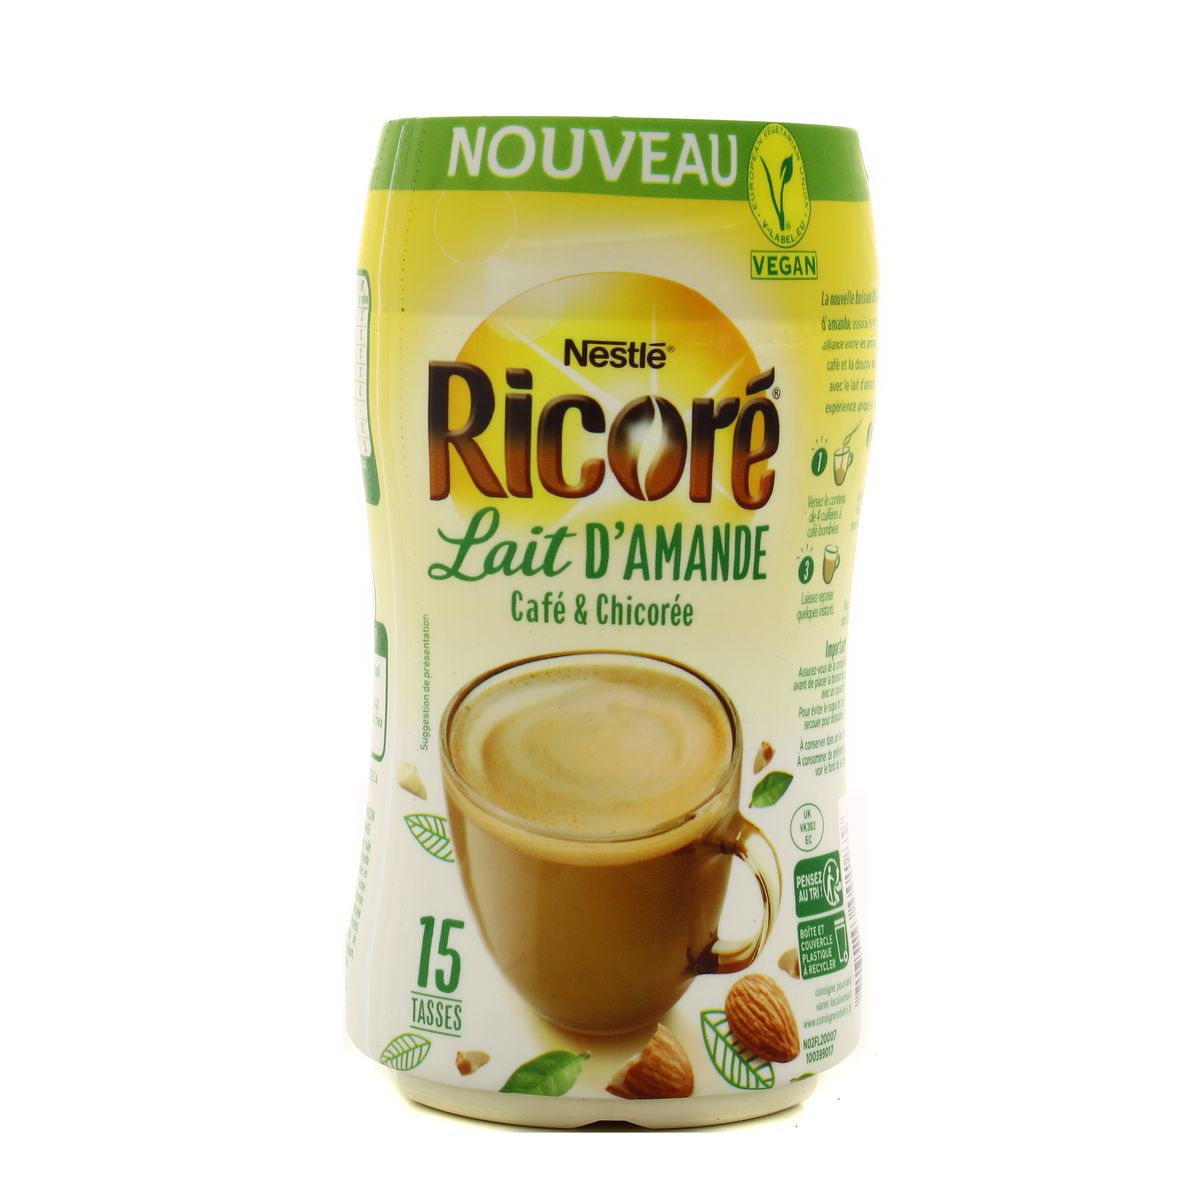 RICORÉ® Lait d'Amande, Café & Chicorée caramel Latte